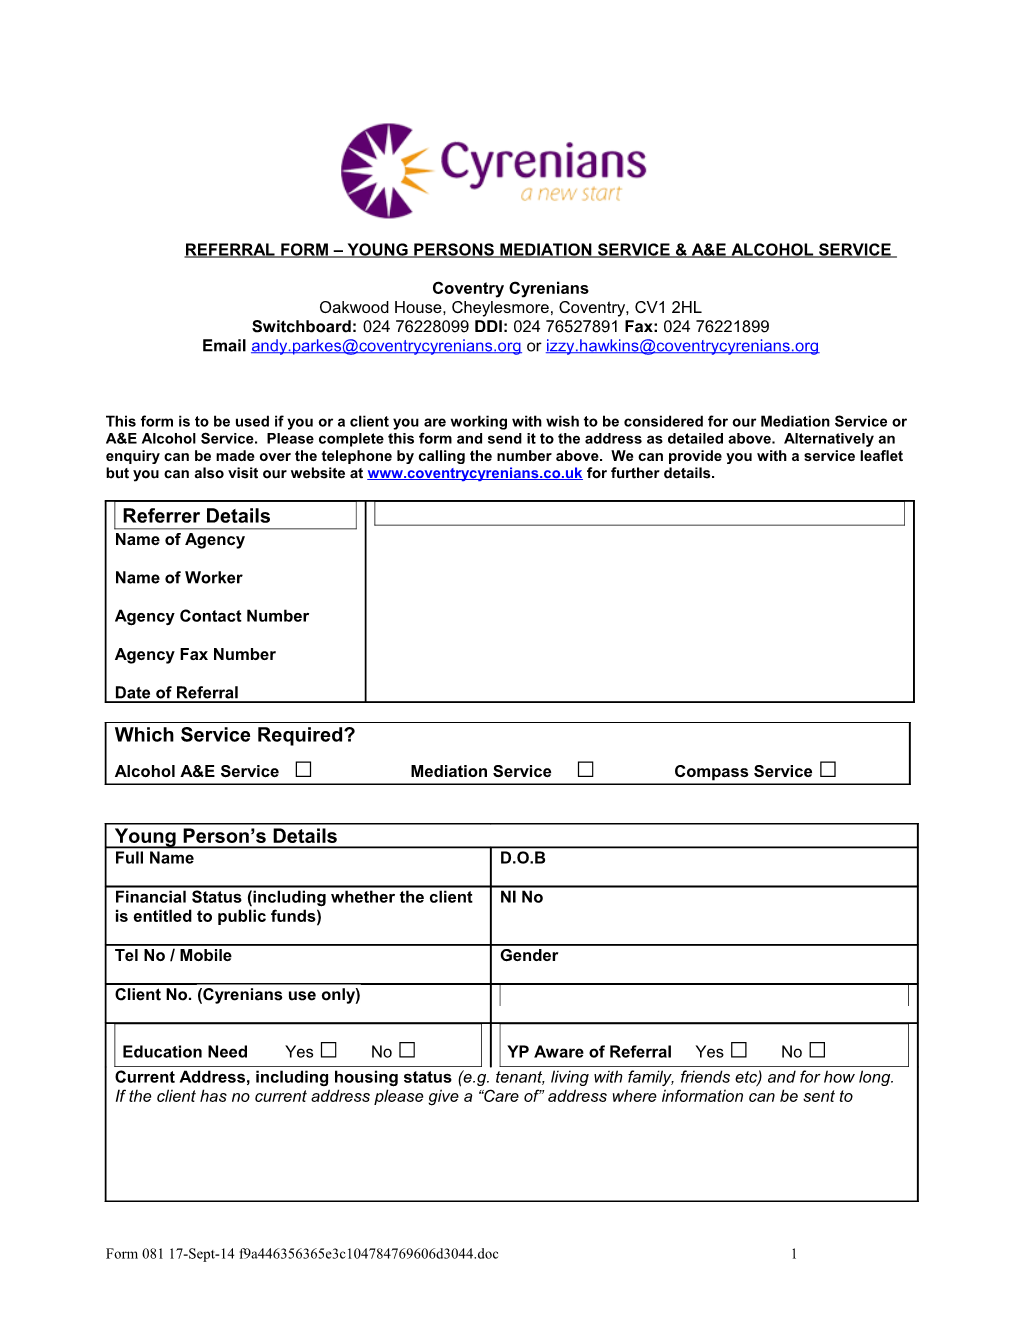 Cyrenians Enquiry Form